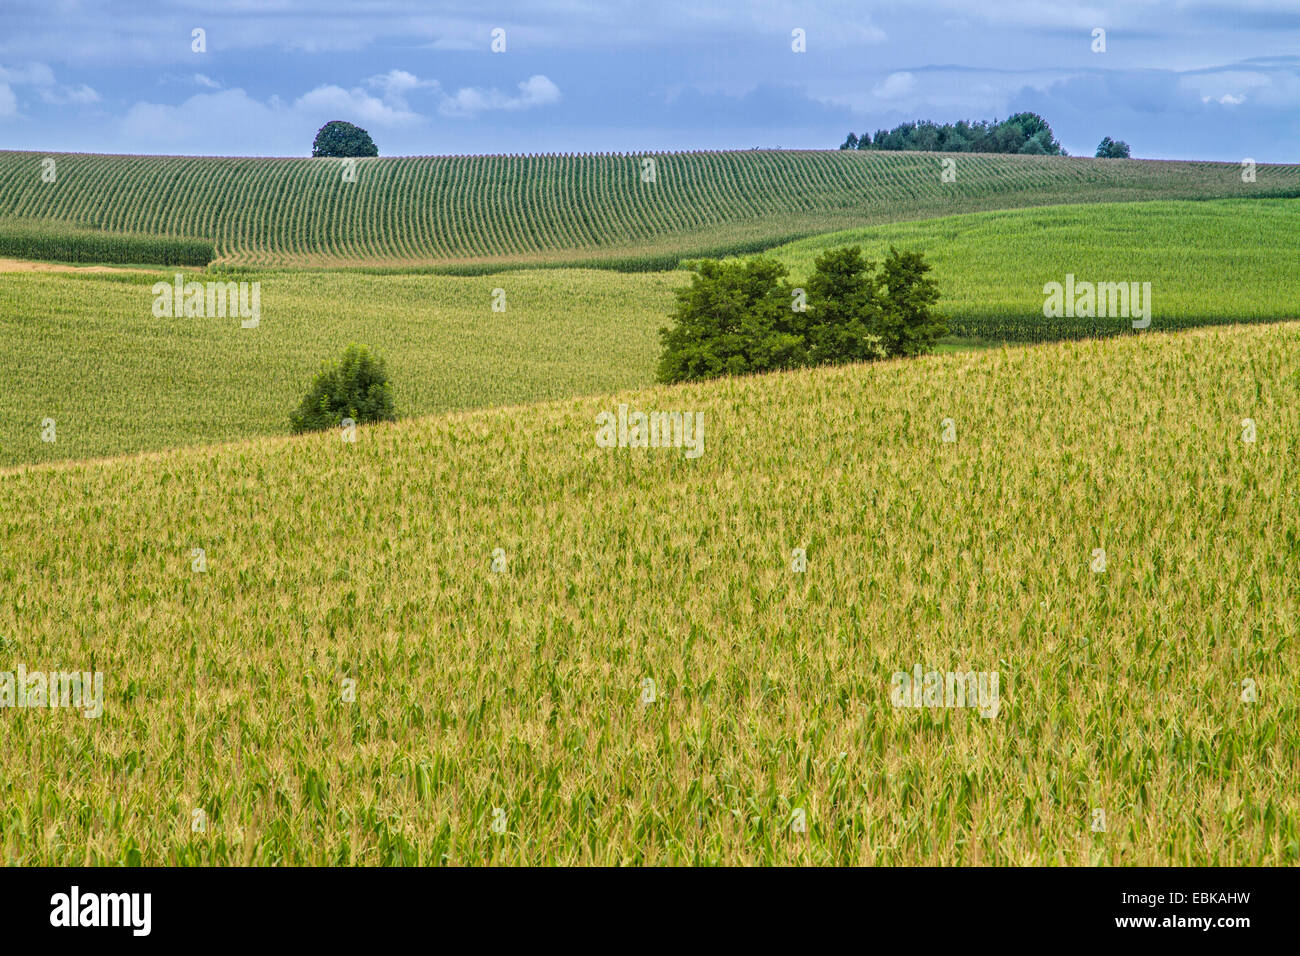 El maíz, el maíz (Zea mays), biomasa, campos, Baviera, Alemania, Dorfen Isental Foto de stock